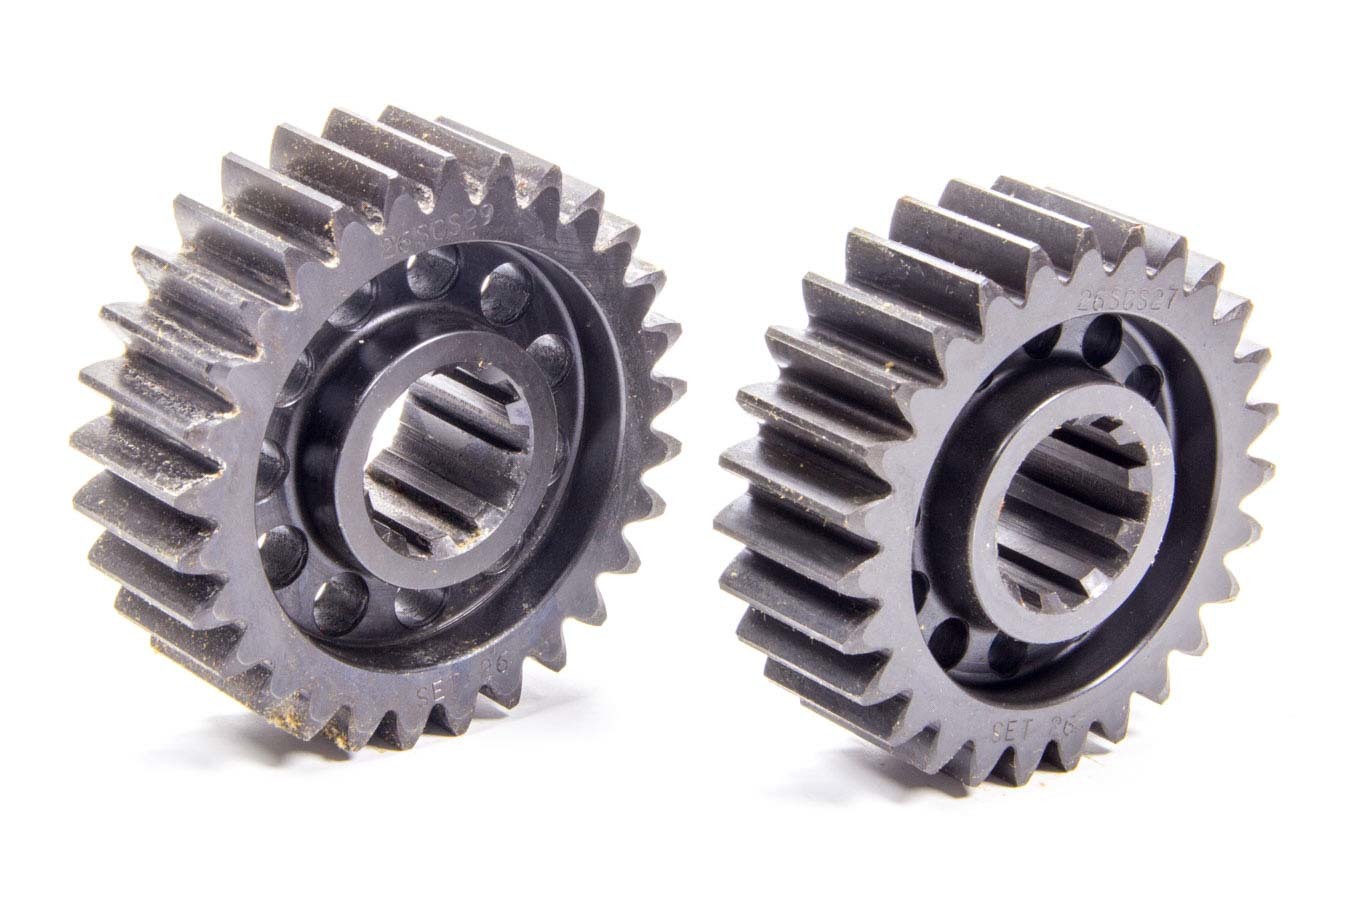 SCS Gears 26 Quick Change Gear Set, Professional, Set 26, 10 Spline, 4.11 Ratio 4.41 / 3.83, 4.86 Ratio 5.22 / 4.52, Steel, Each